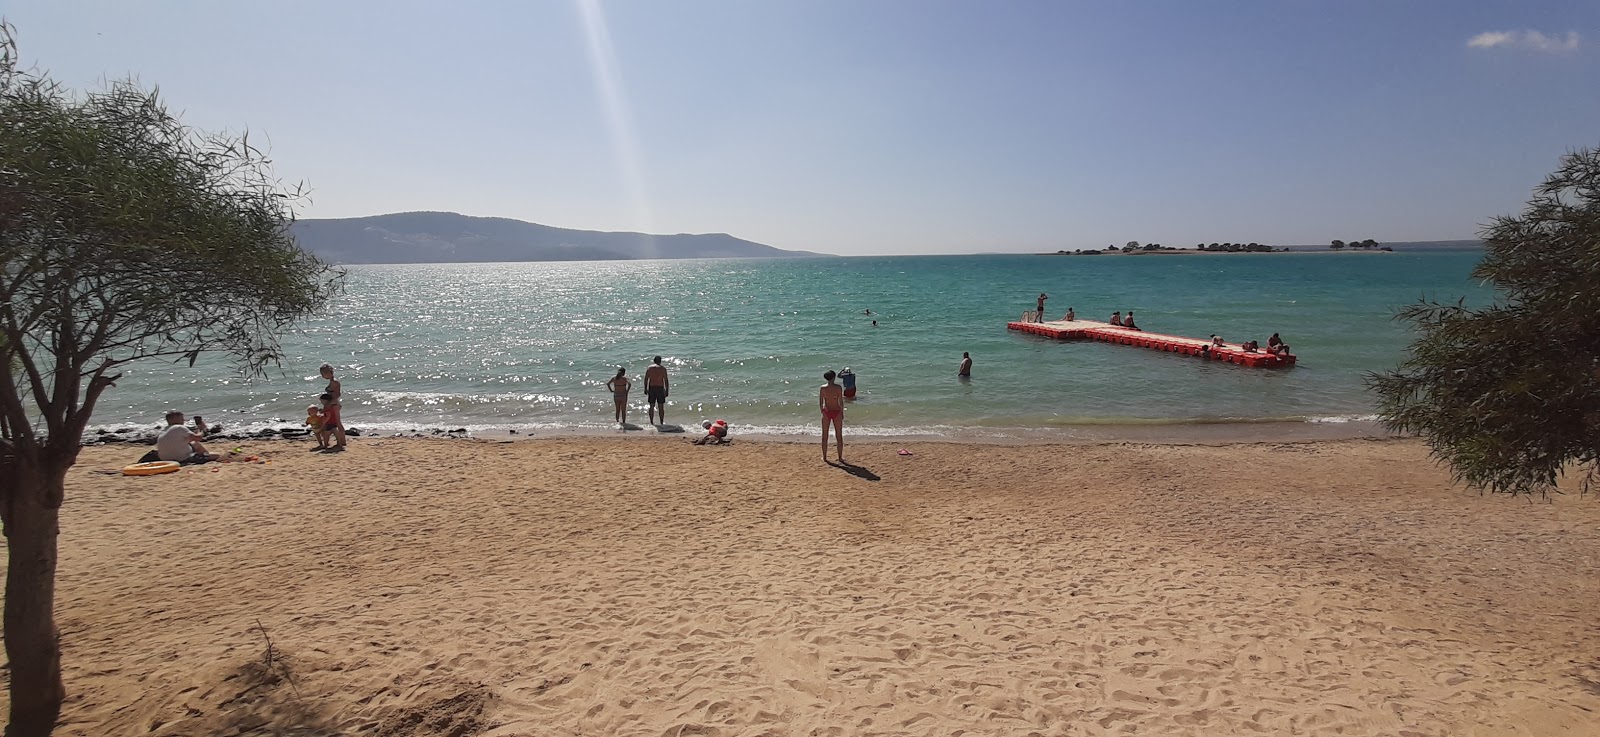 Foto di Kerem beach II con una superficie del acqua turchese